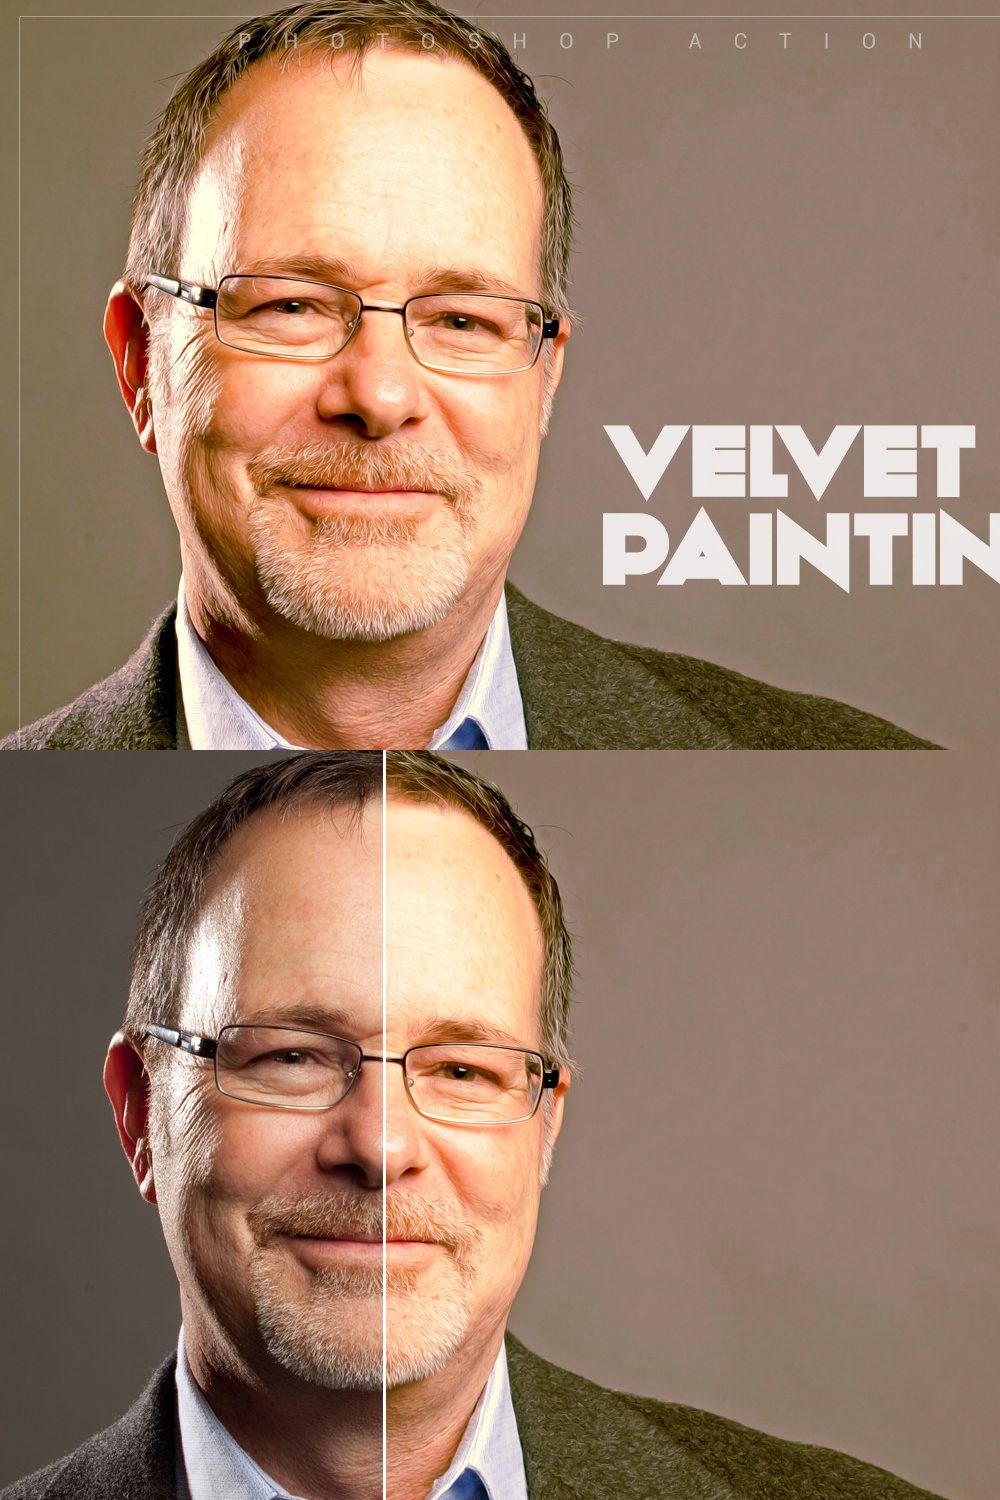 Velvet Painting pinterest preview image.